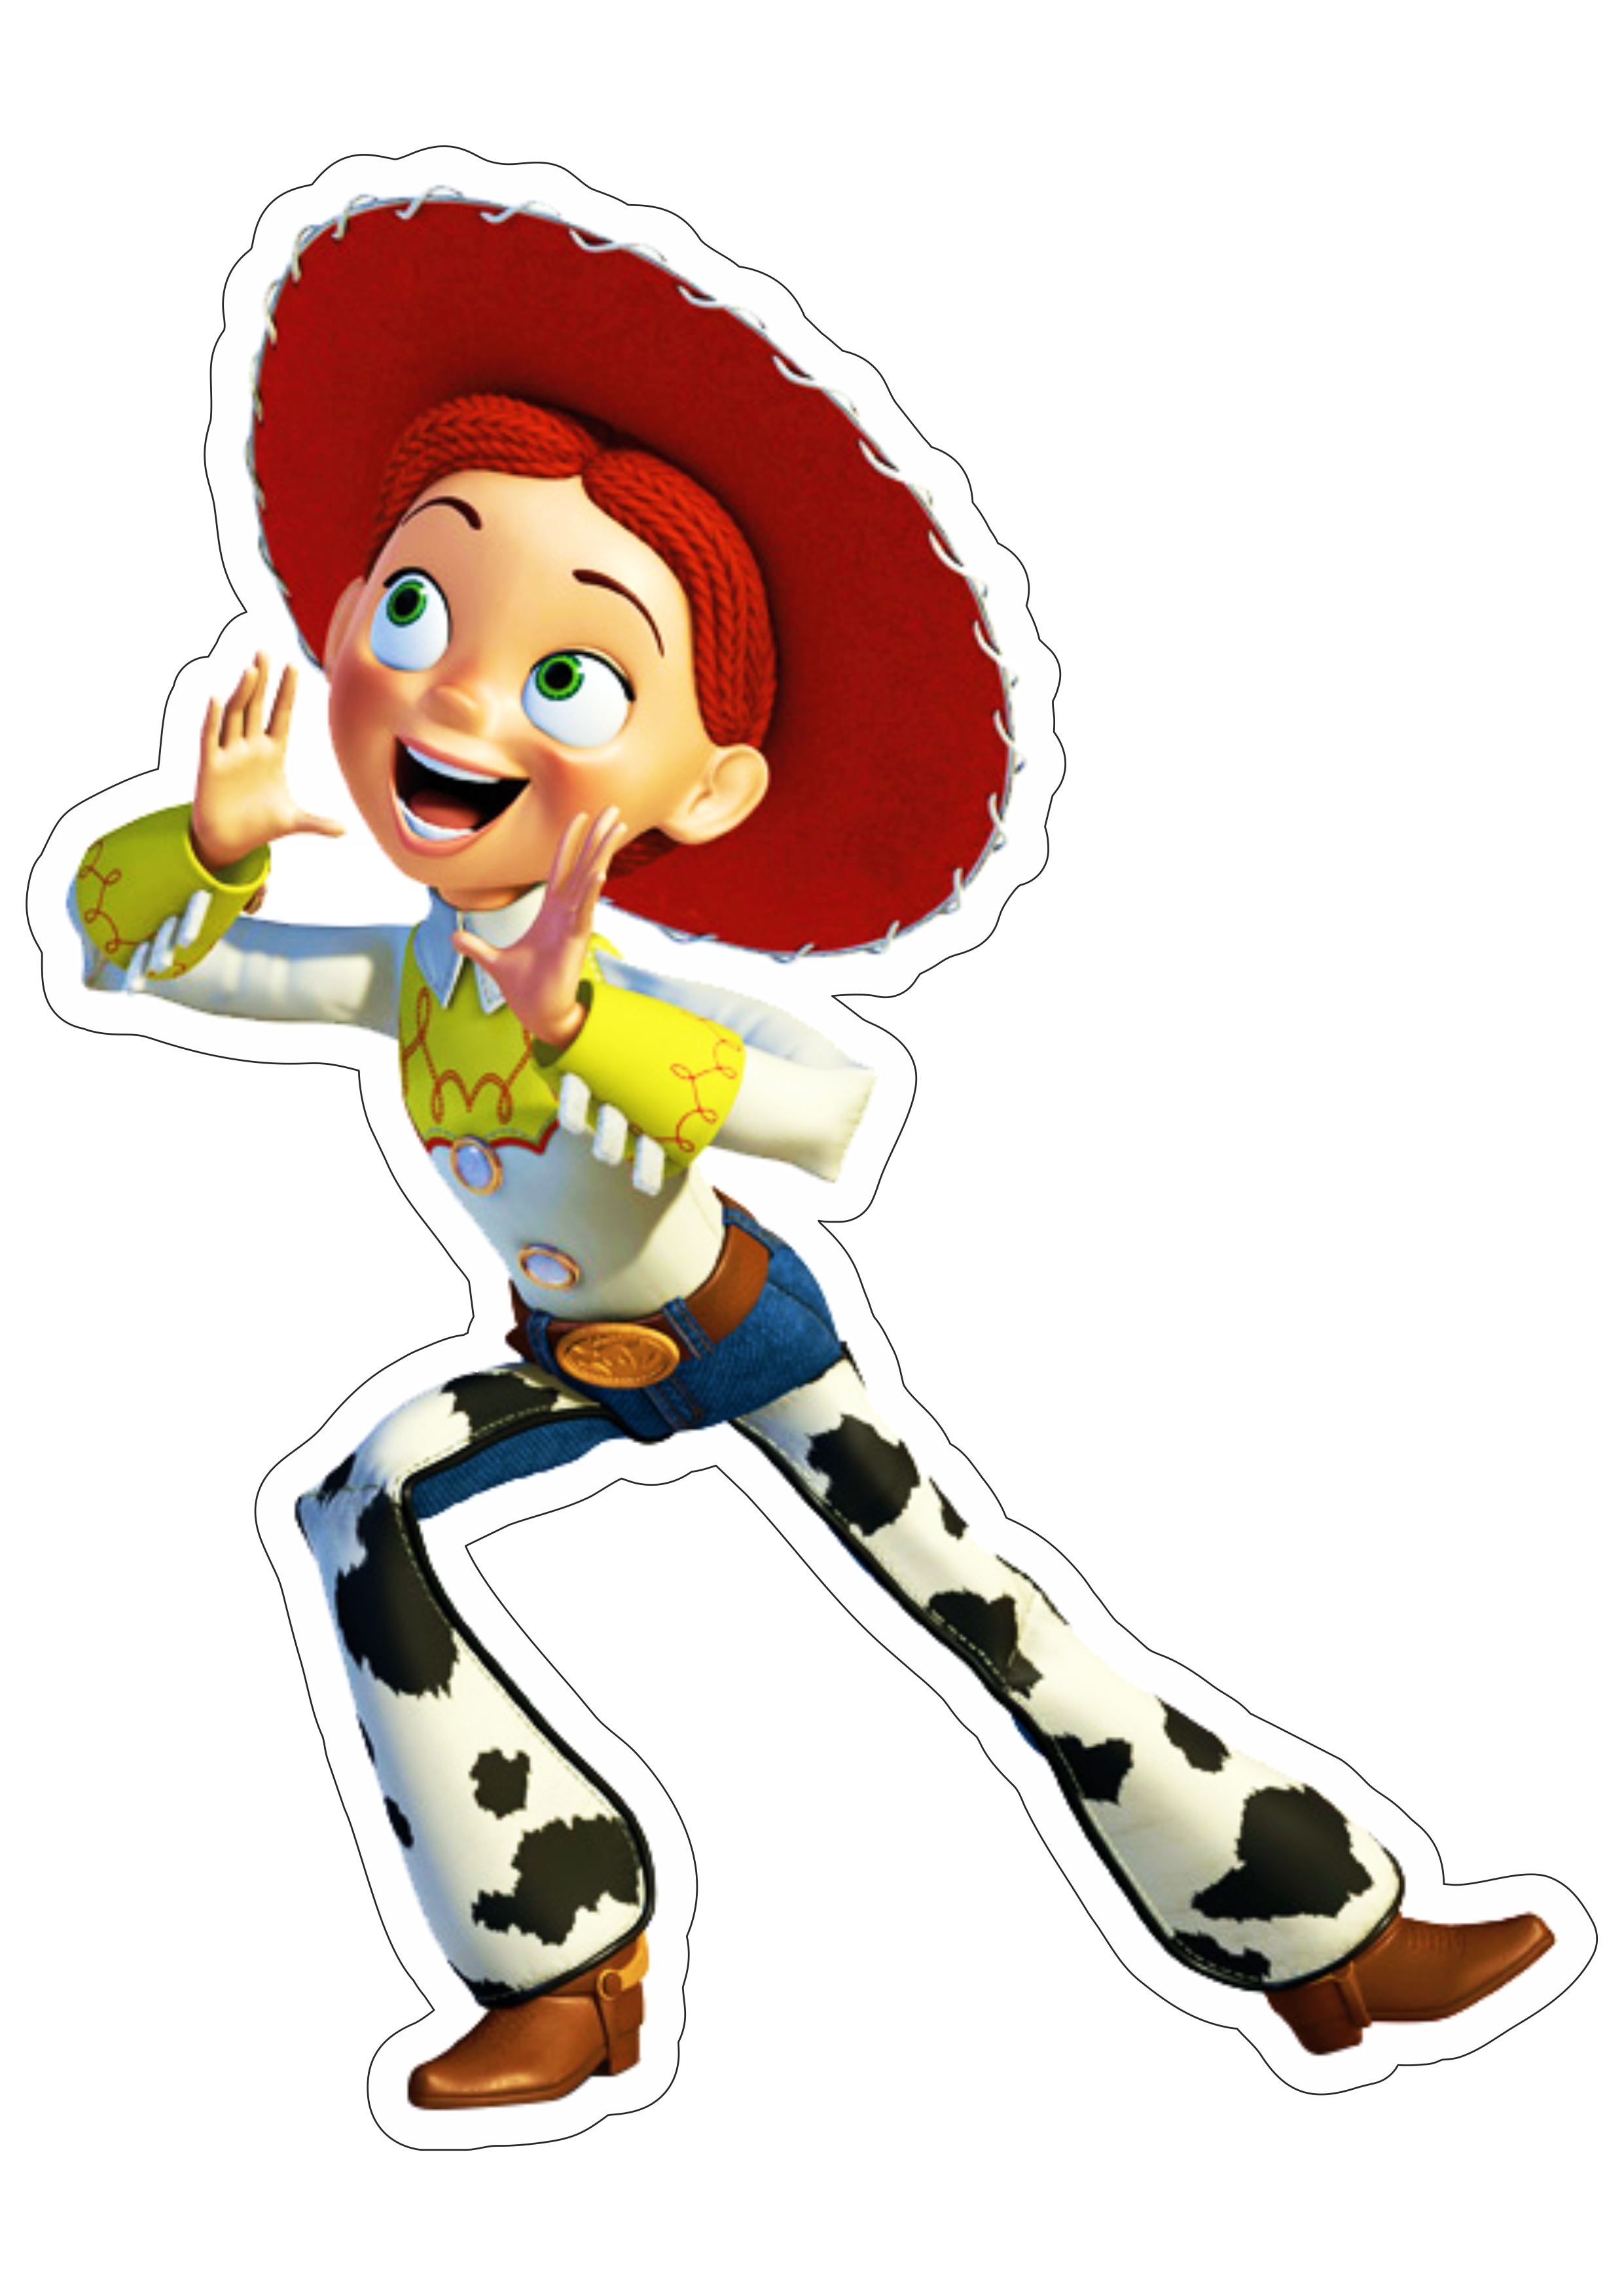 Toy Story Jessie brinquedo menina cowboy disney plus streaming animação infantil fundo transparente png